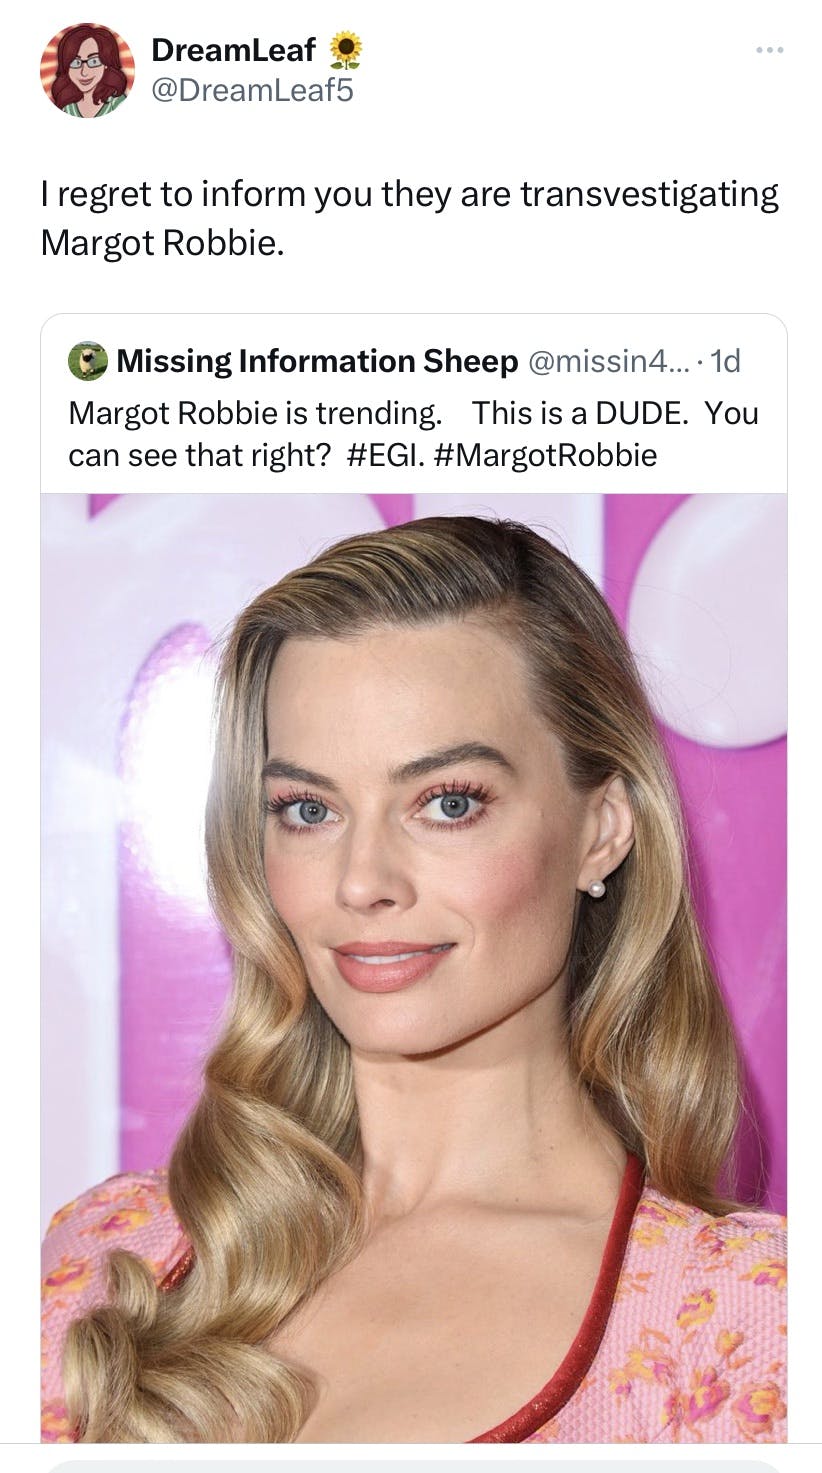 a tweet about Margot Robbie